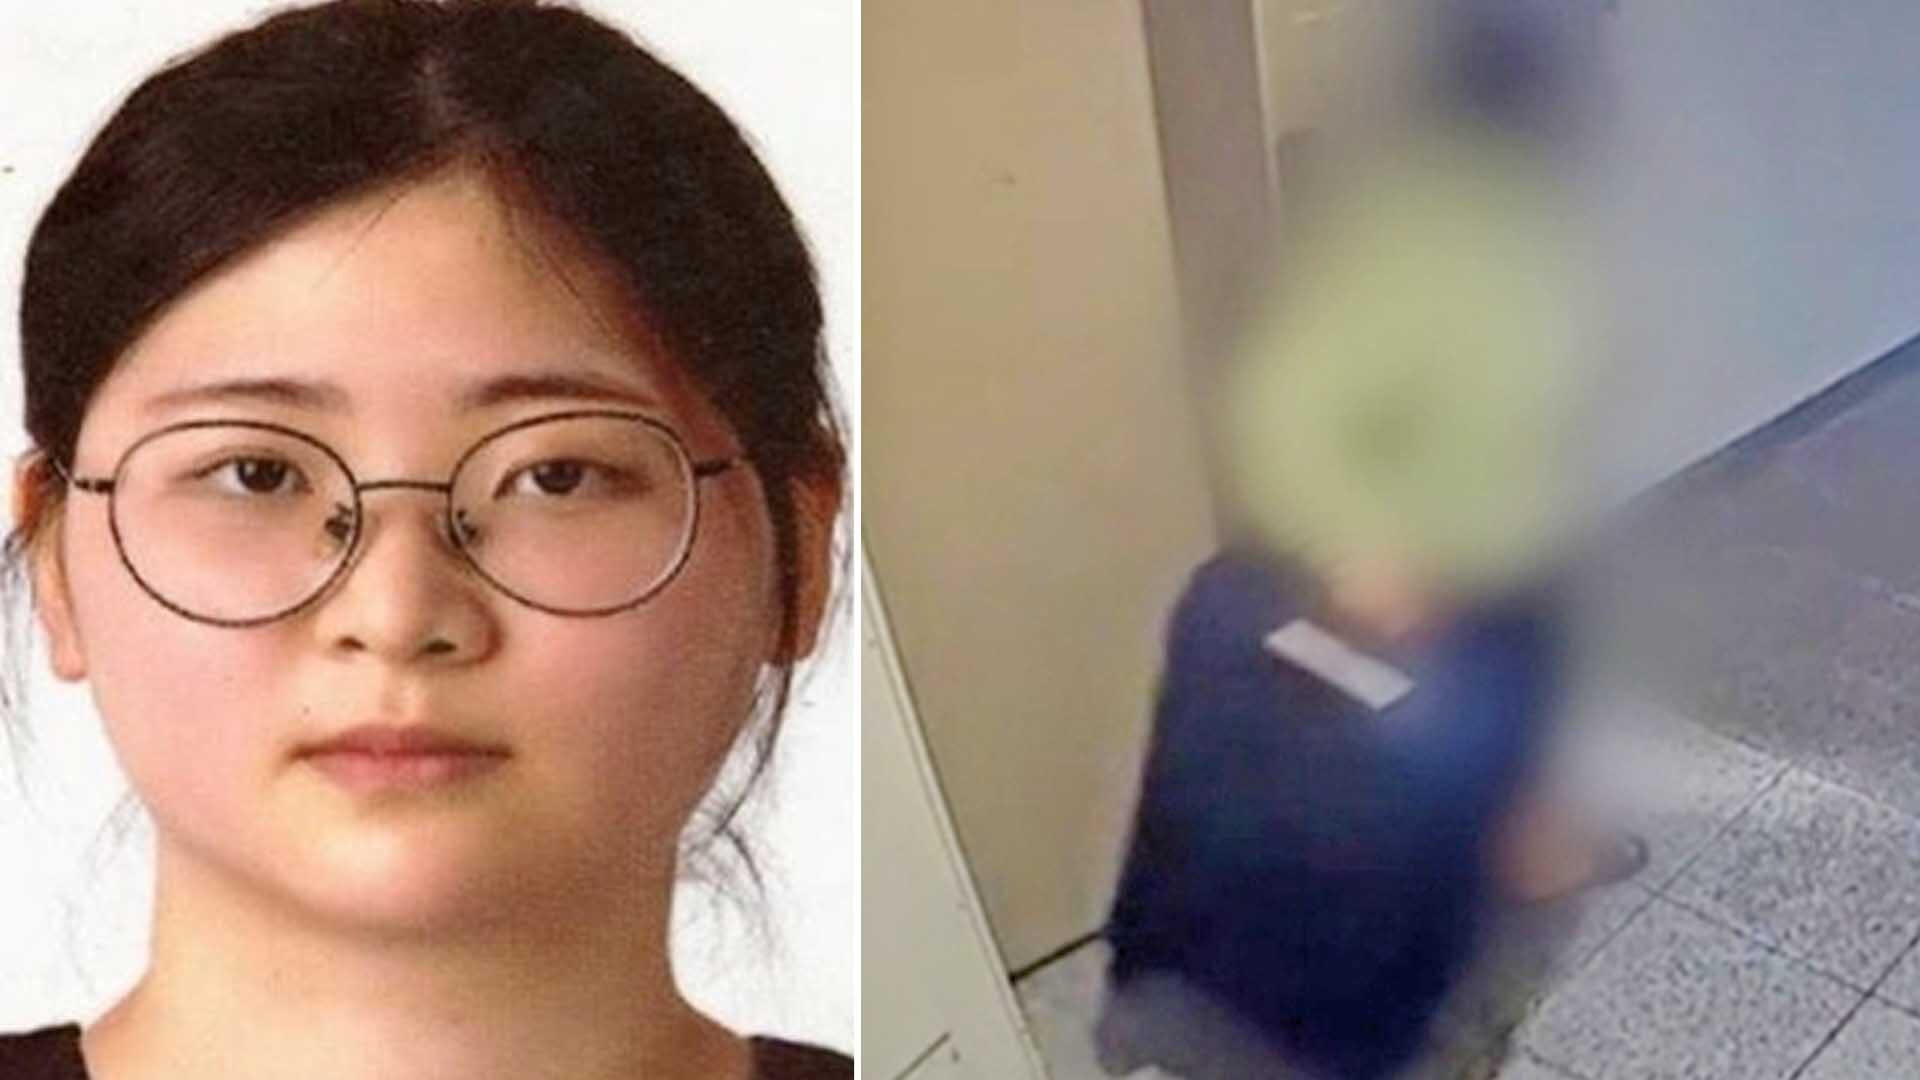 ตัดสิน “ขังลืม” สาวเกาหลีคลั่งรายการอาชญากรรม-แทงกว่า 100 ครั้งฆ่าครูกวดวิชา